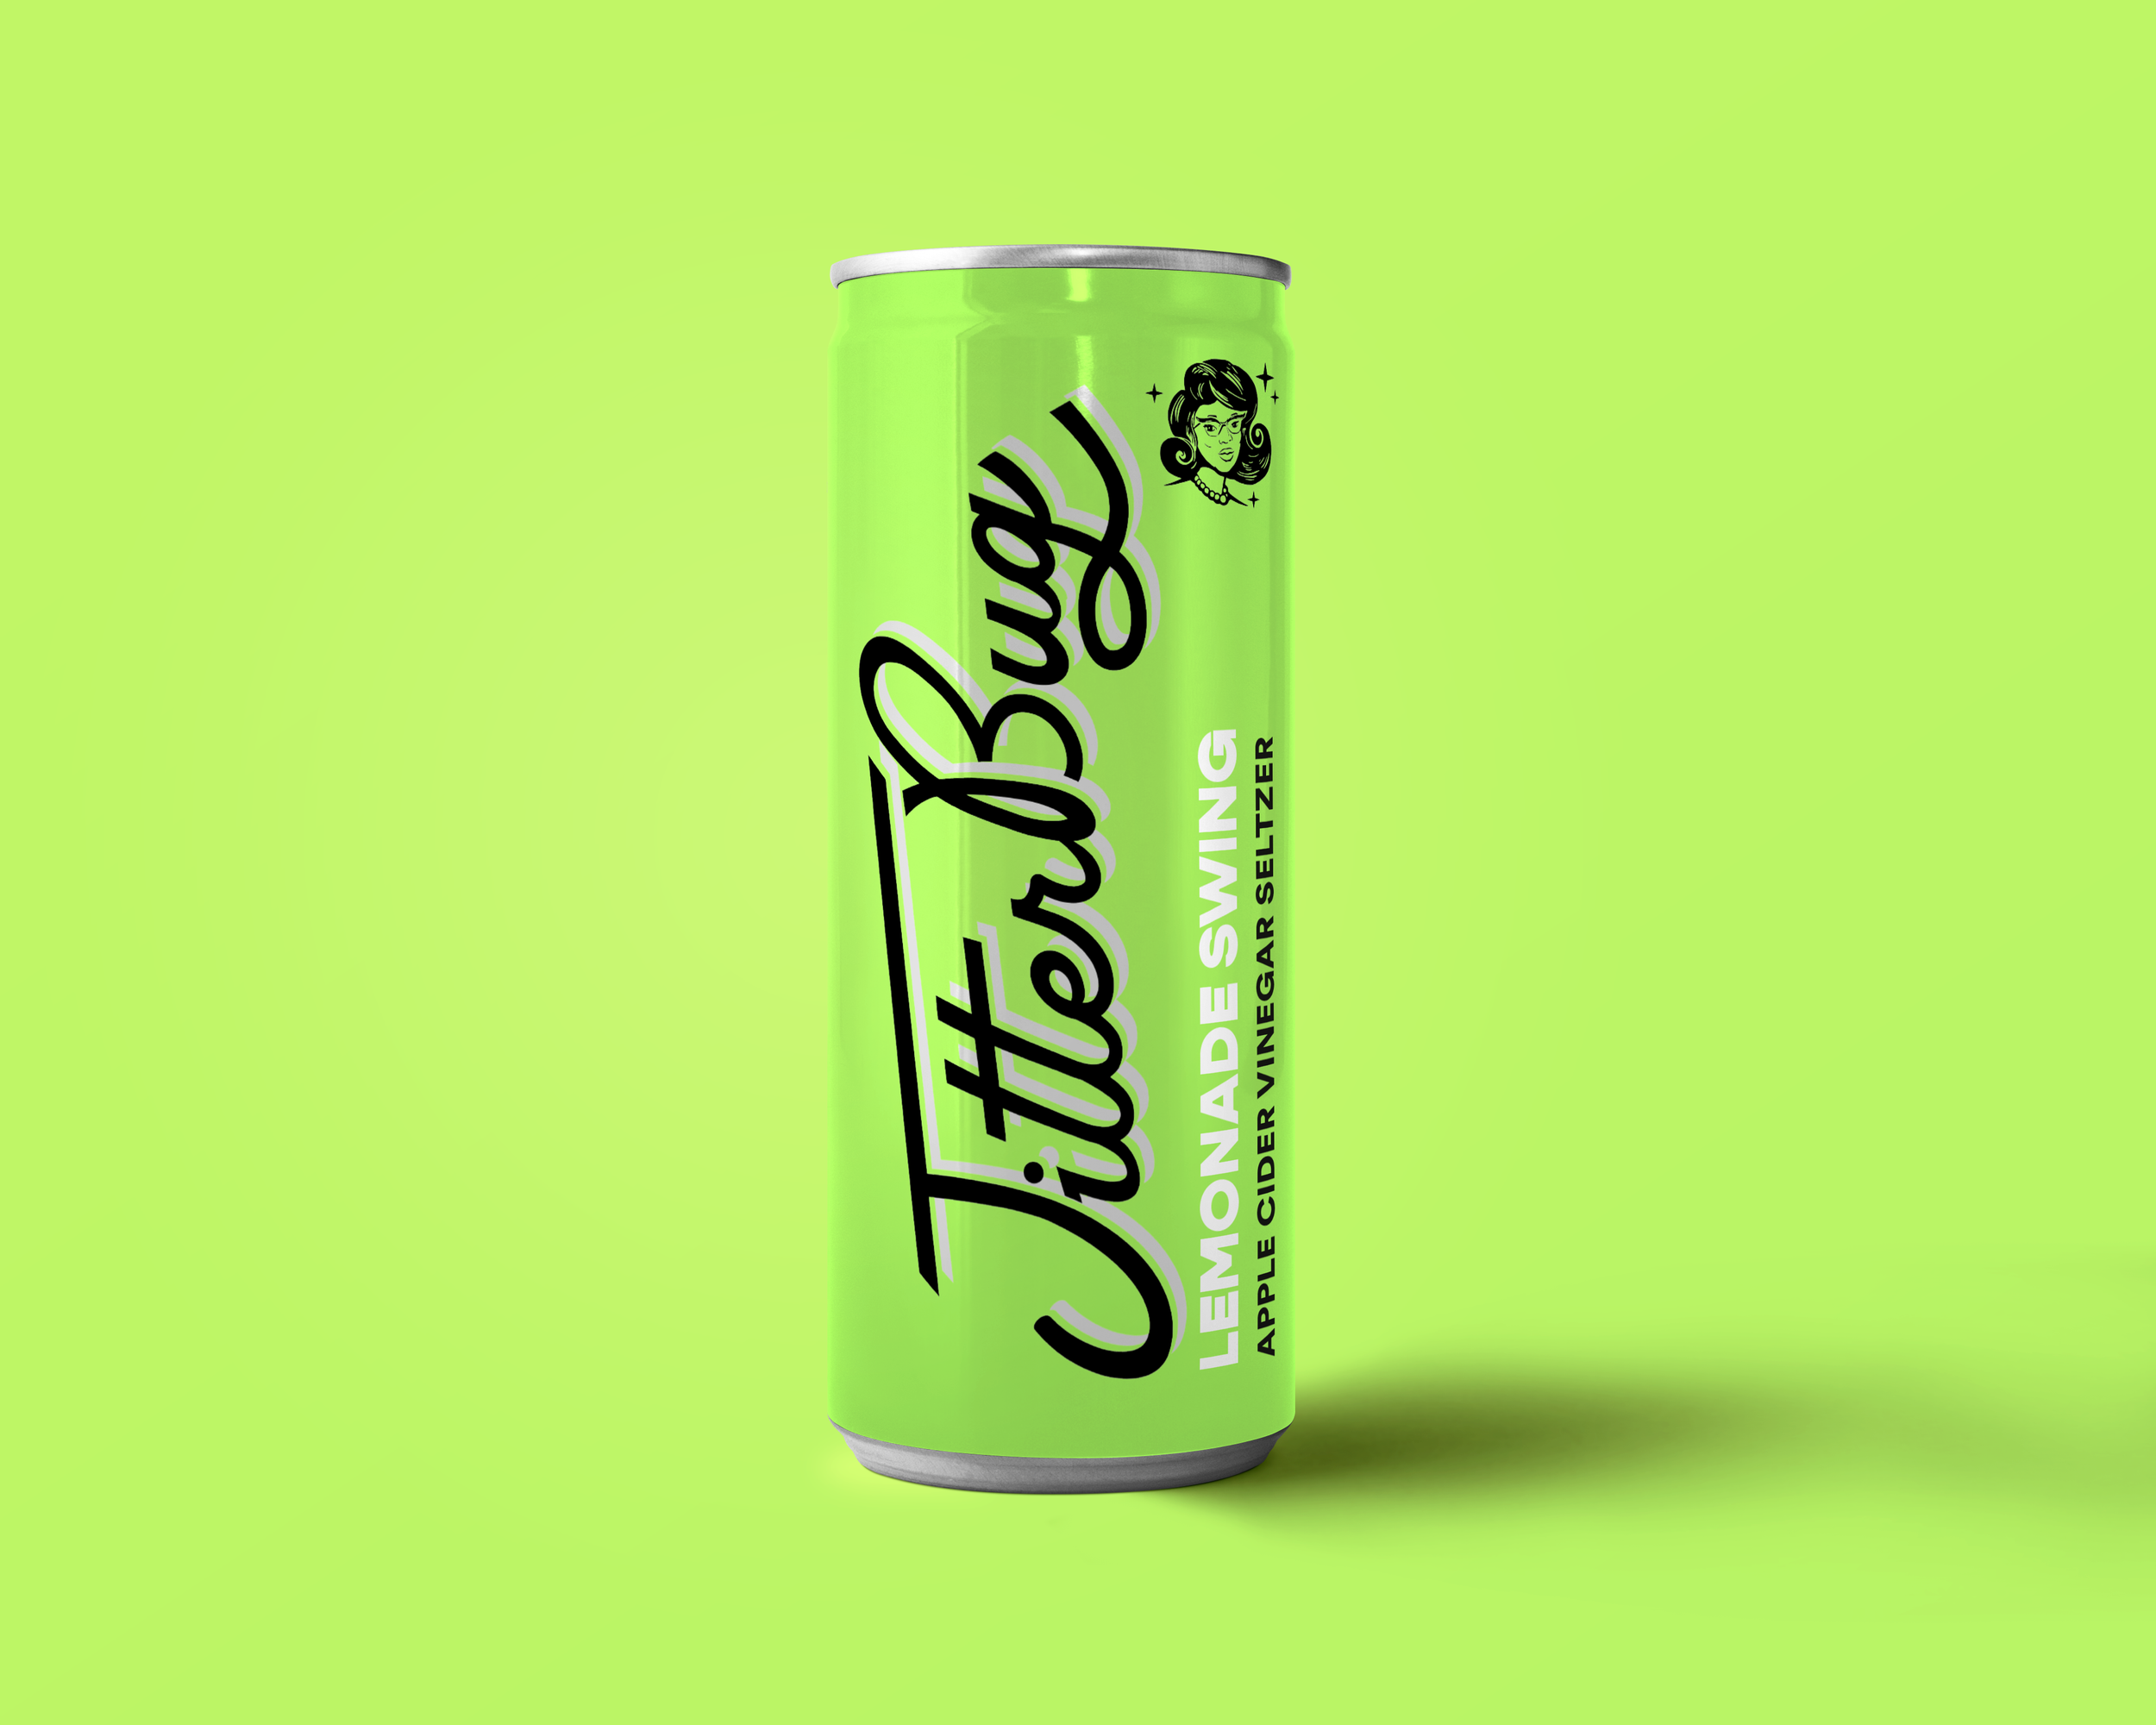 Packaging-designer-drink packaging design  - can label design 